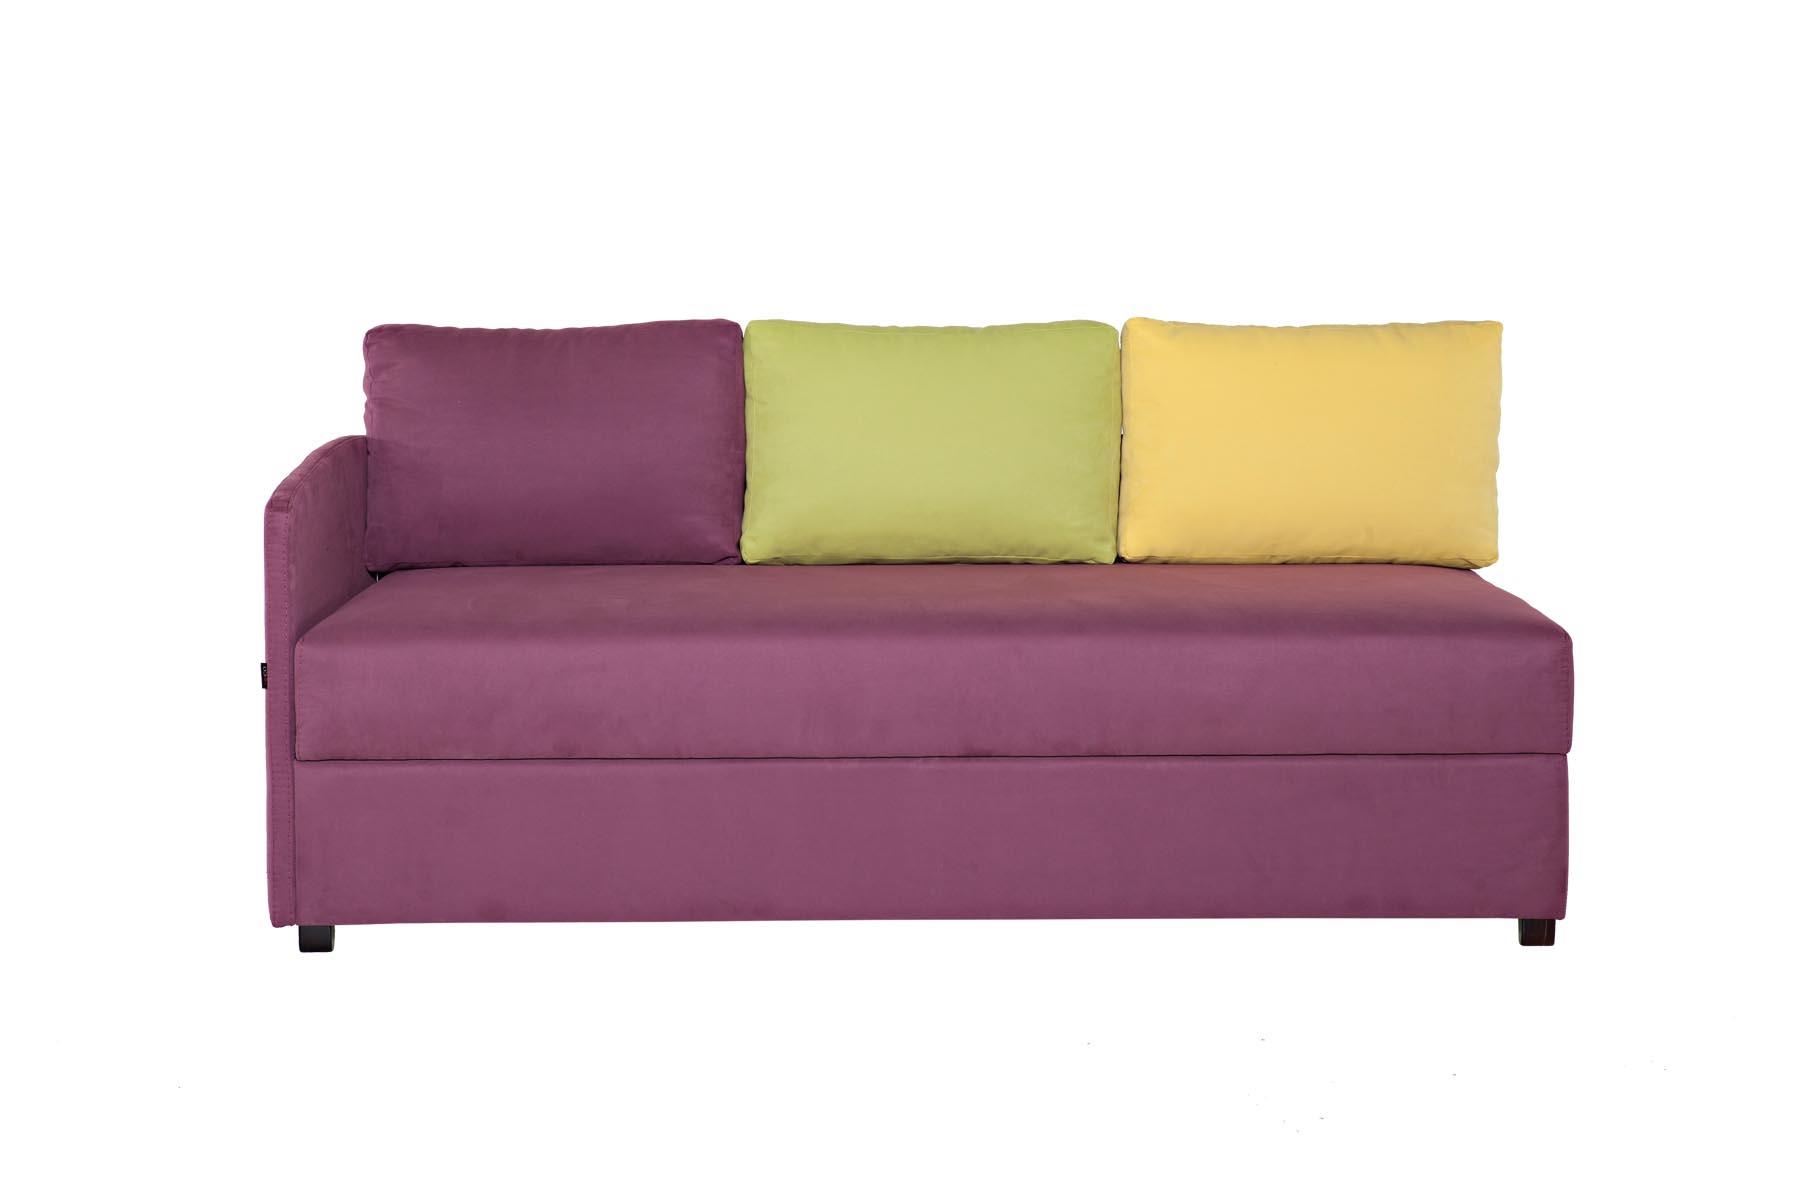 Capry je sofa koja je idealna za manje prostorije. Preporučujemo je za prostorije koje se koriste svakodnevno za spavanje, jer je u presjeku ležaja žičano jezgro. Ispod ležaja se nalazi koristan prostor za odlaganje.